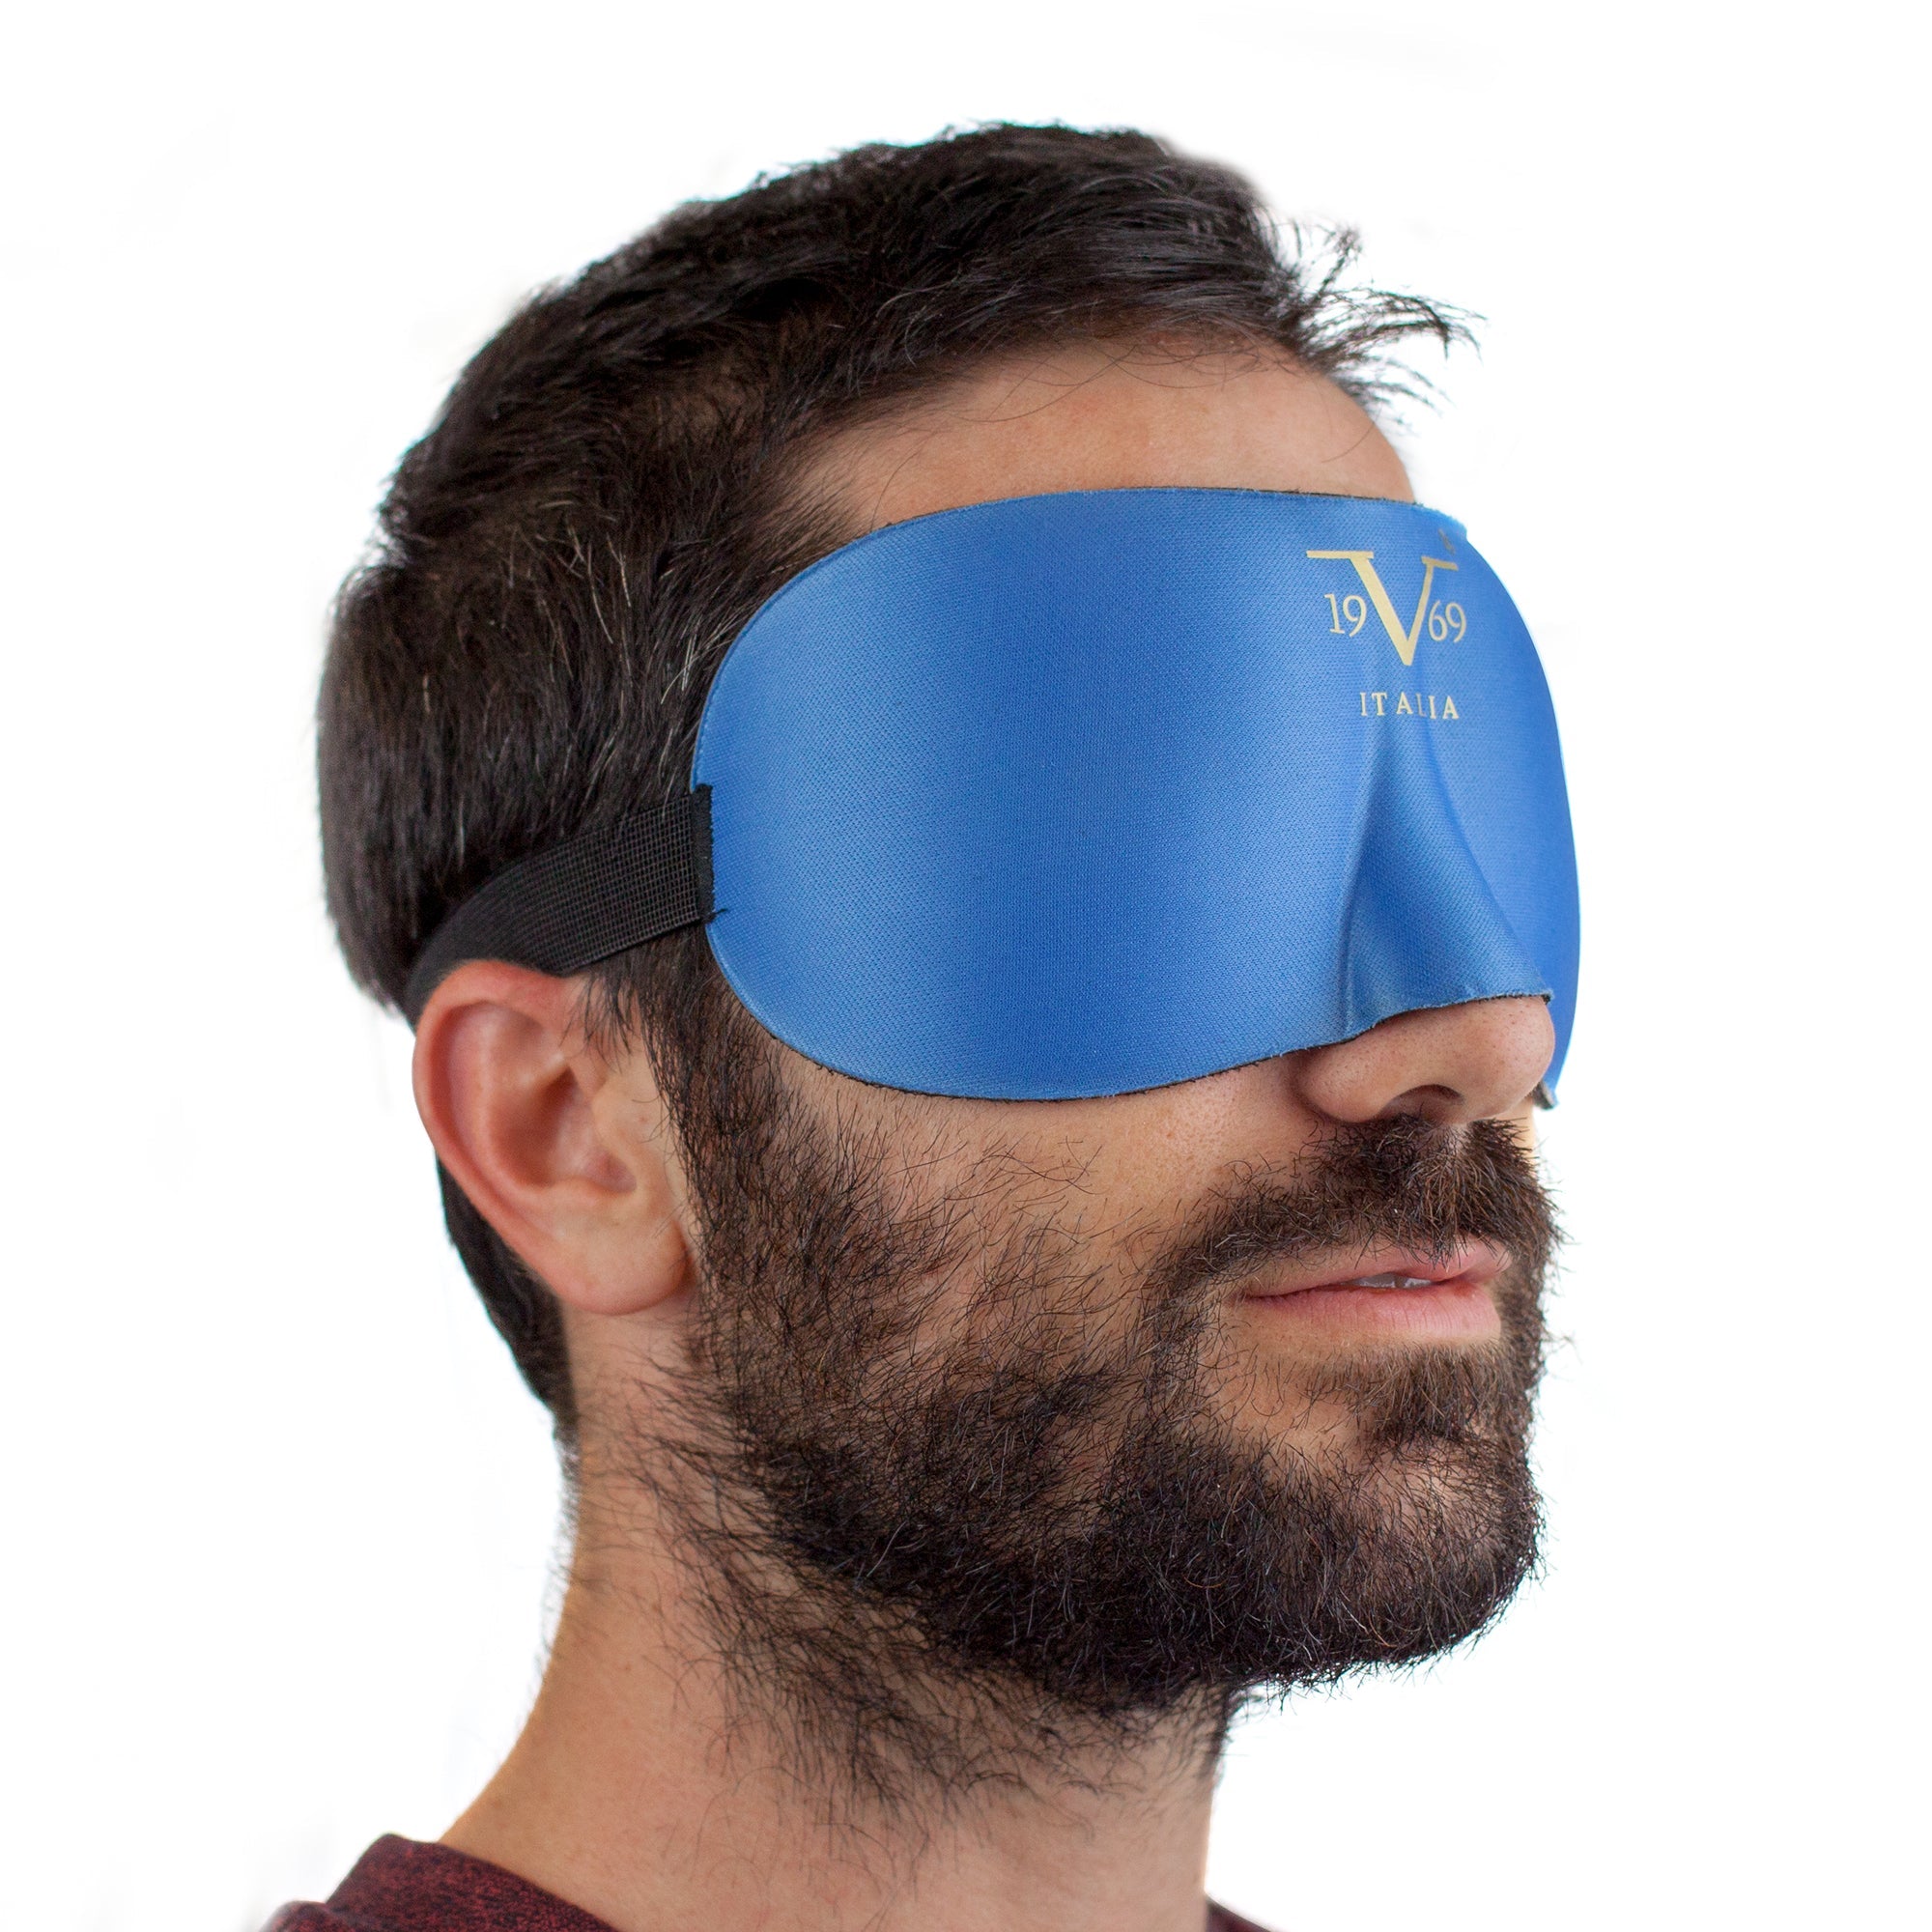 man wearing contoured sleep mask for blindfold sleep